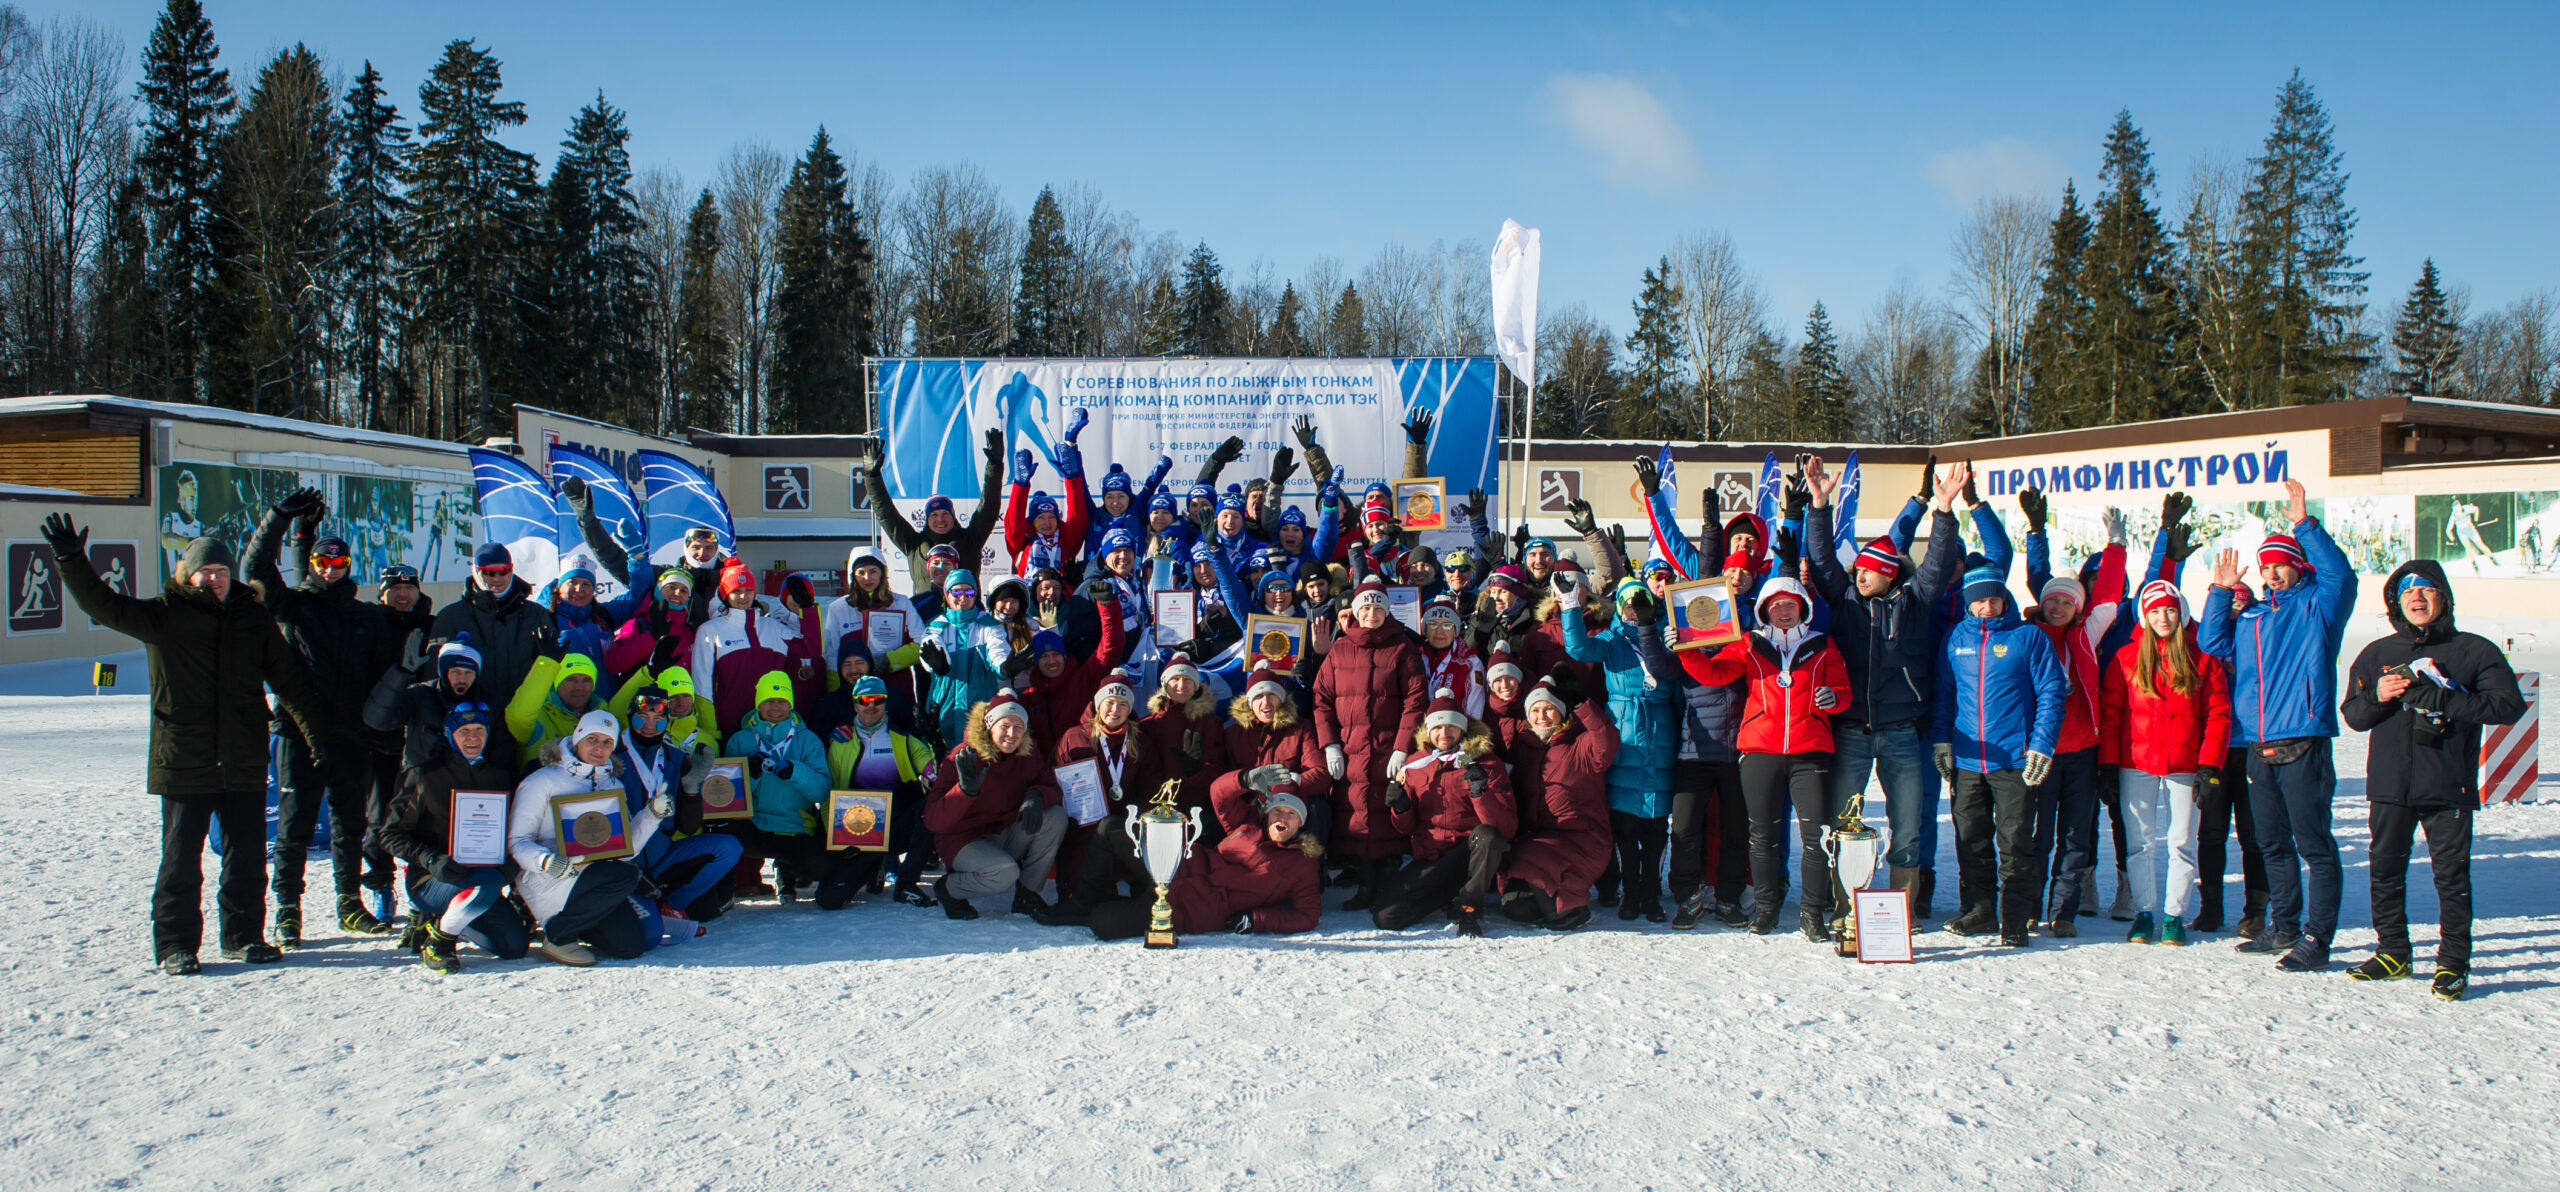 ТЭК соревнования по лыжным гонкам 2023 Россети. Лыжная атлетика